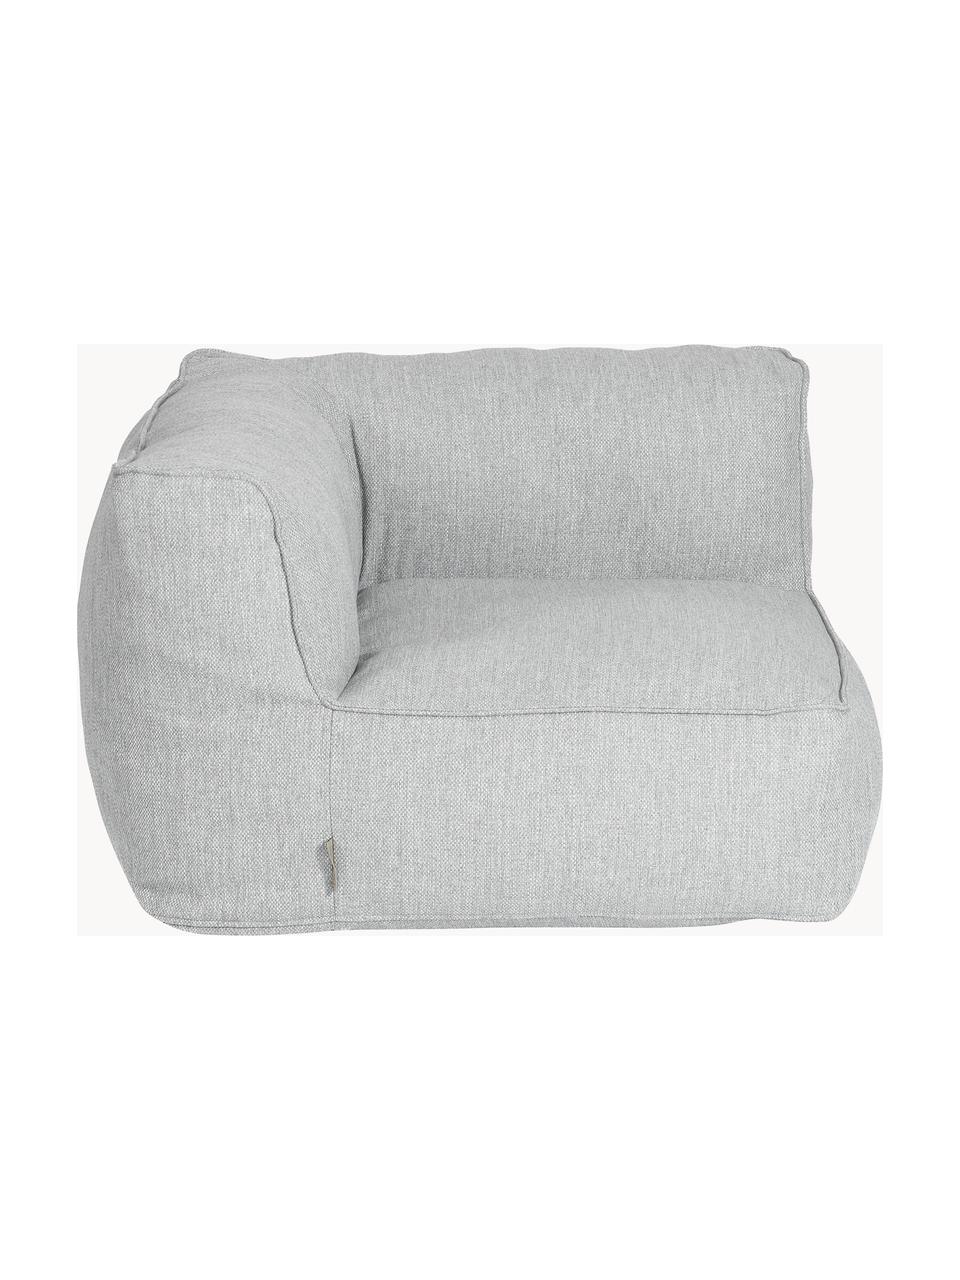 Módulo de esquina de exterior sofá Grow, Tapizado: 100% poliéster, resistent, Tejido gris claro, An 95 x F 95 cm